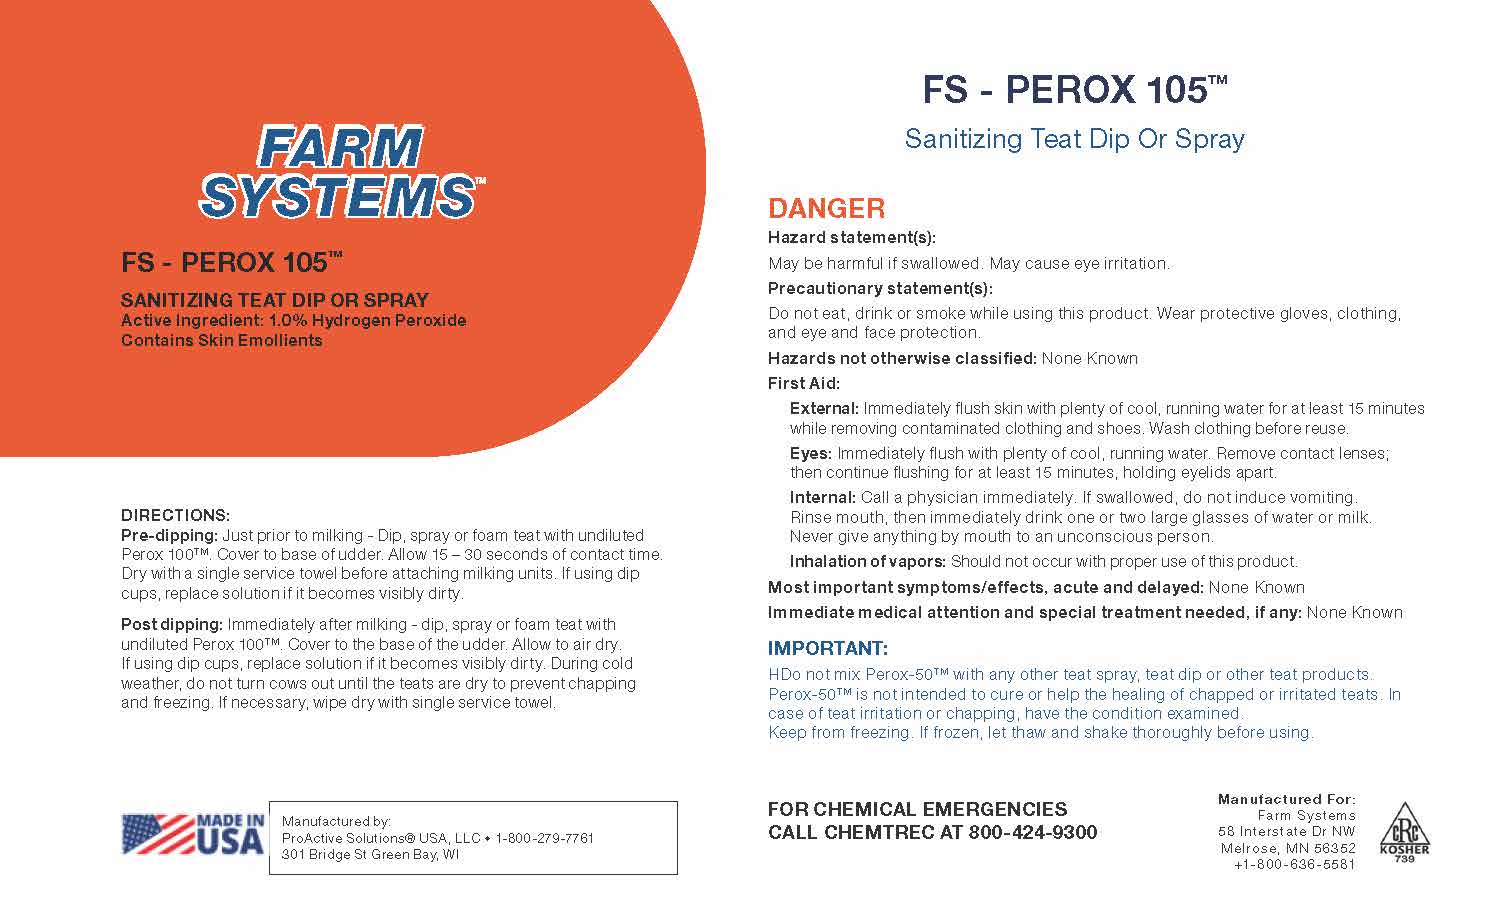 FS Perox 105